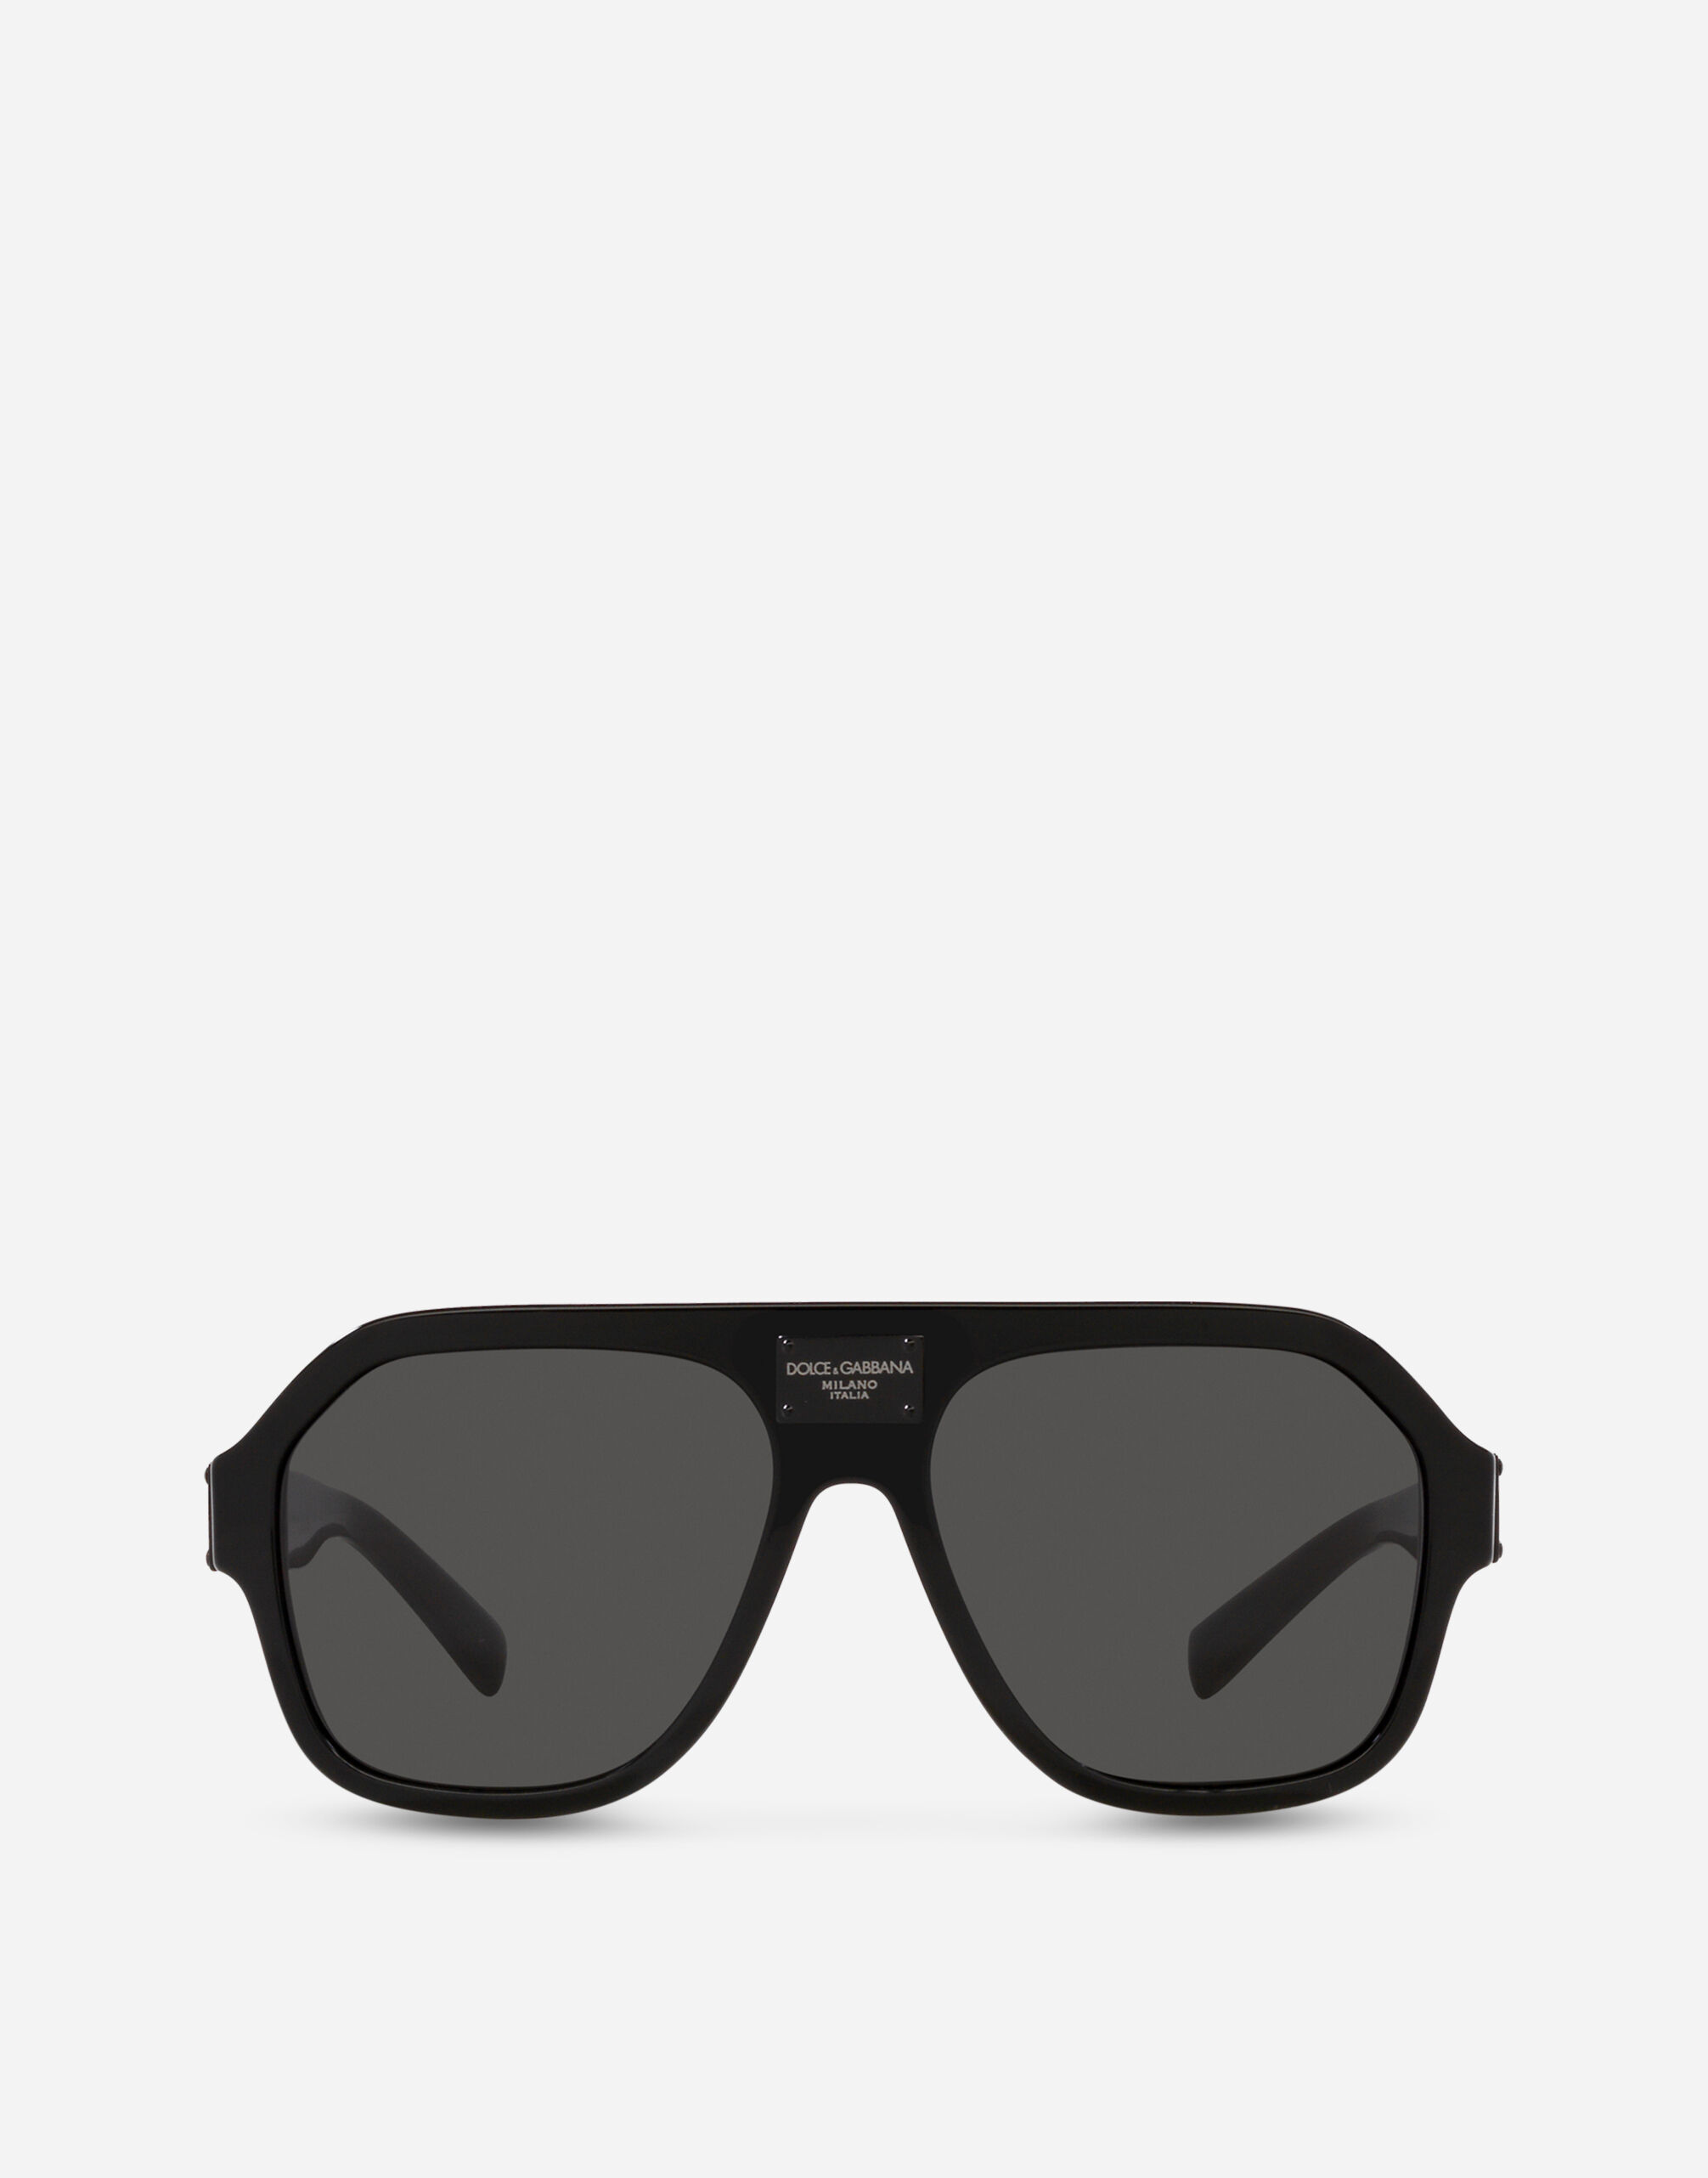 BUNVICK Polarized HD Genuine Glass Sunglasses for Men and Women